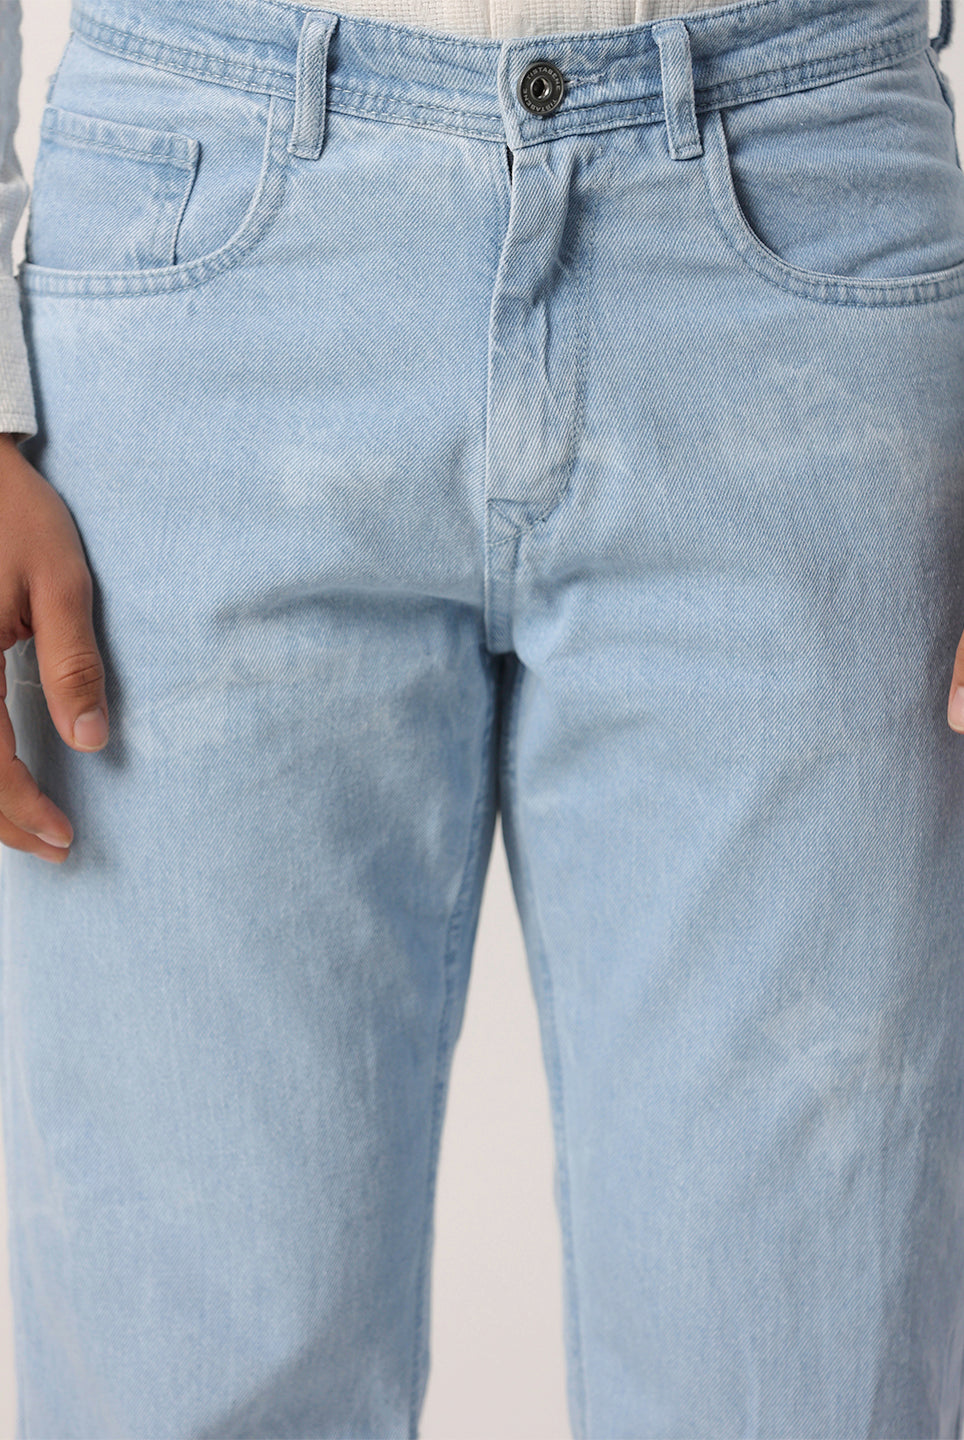 light wash denim jeans mens